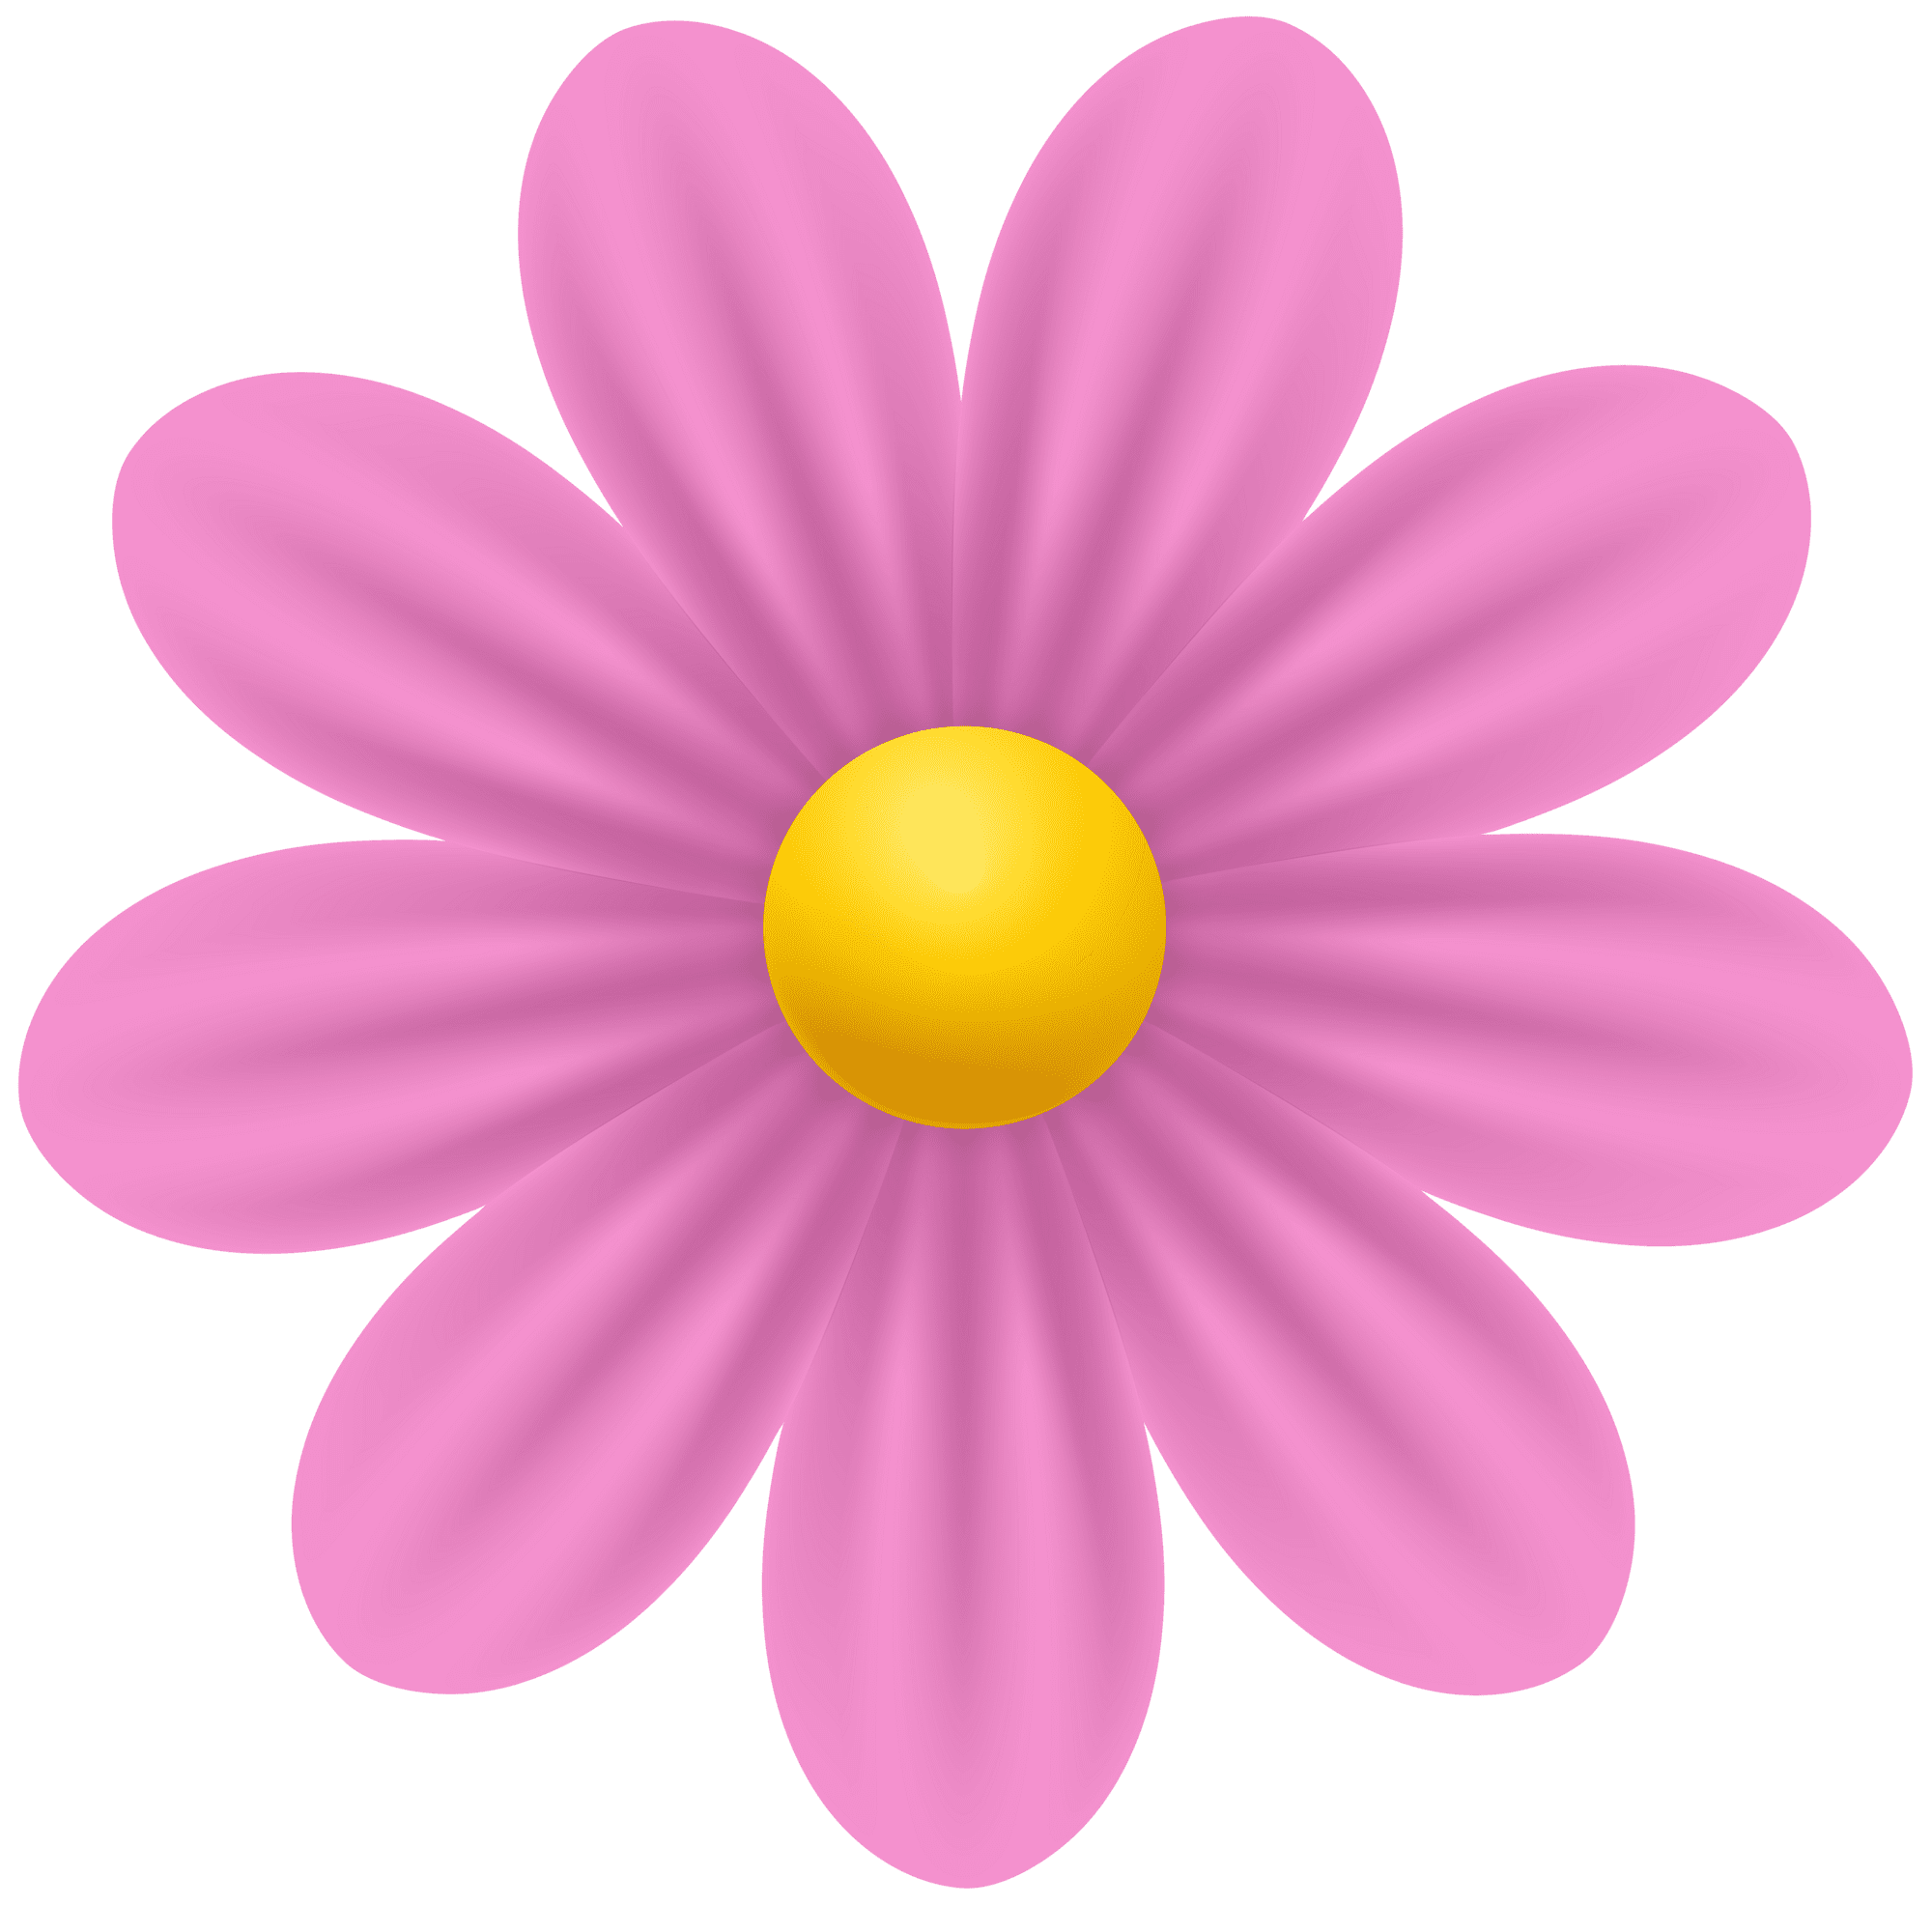 Daisy pink flower clipart clip art